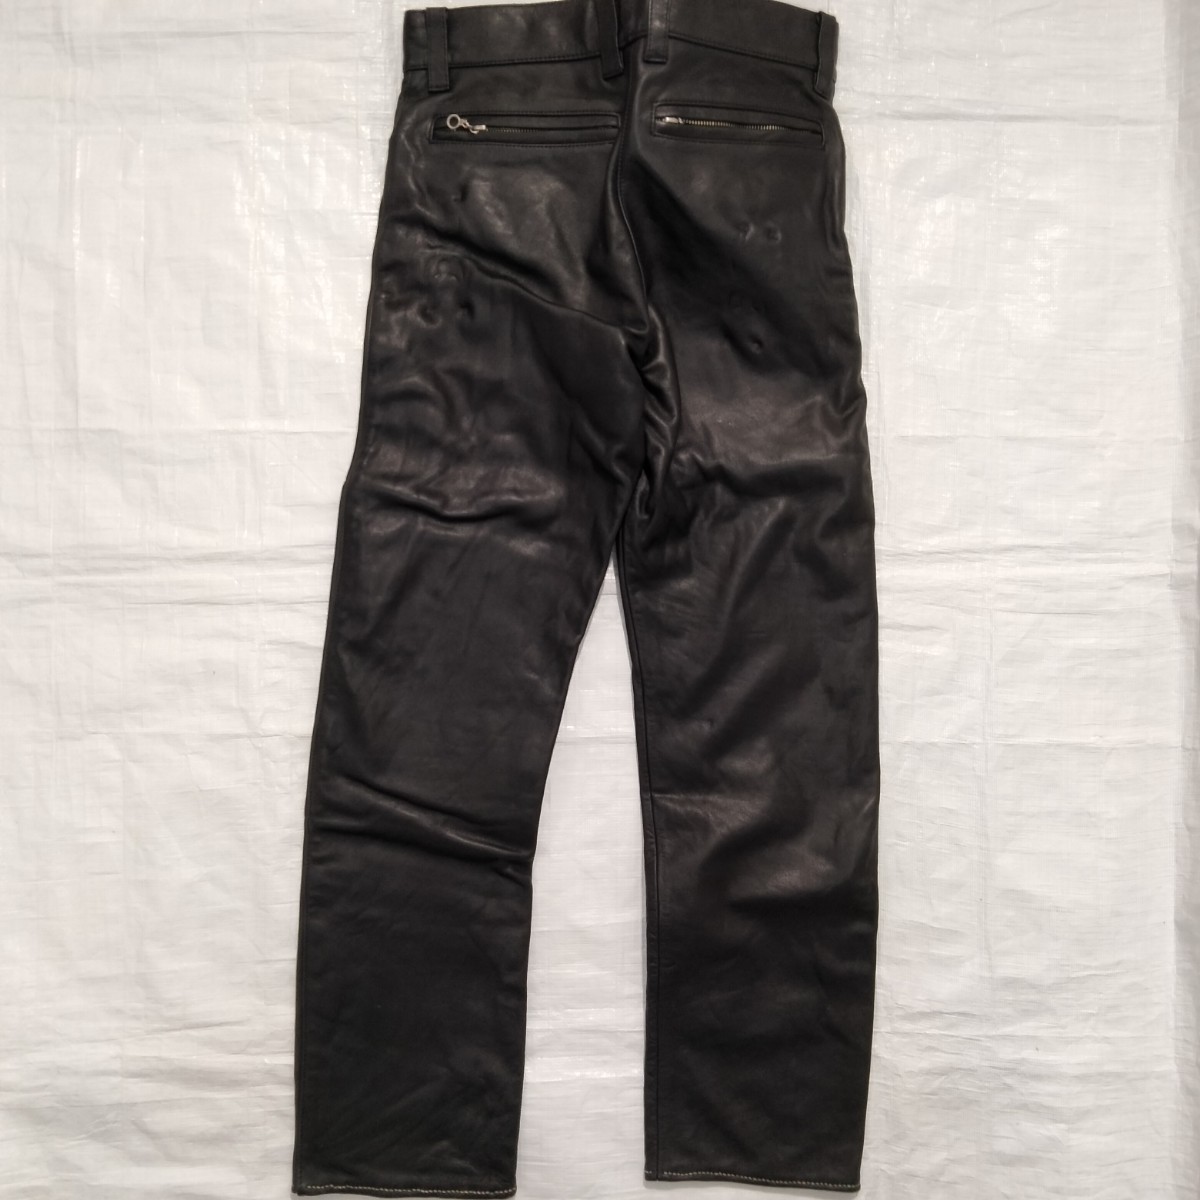 B‘s Leather bikers　レザーパンツ　leather pant　ブラック　革　牛革　バイク用　コーリン　corin 革パン　5ポケット　jeans型　BLACK　_画像3